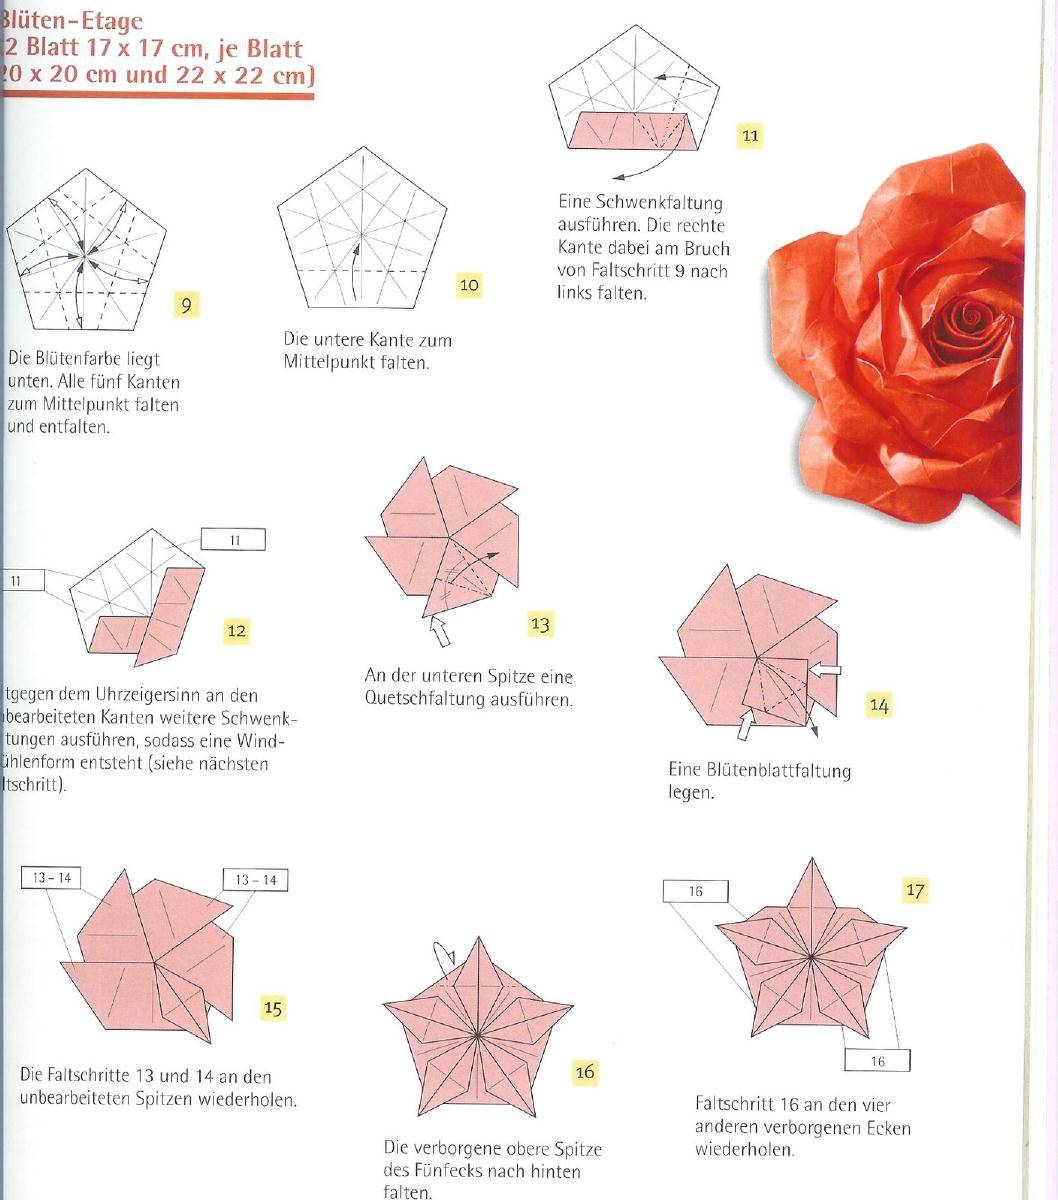 Бутоны роз из гофрированной бумаги с конфетами пошагово: 3 вида